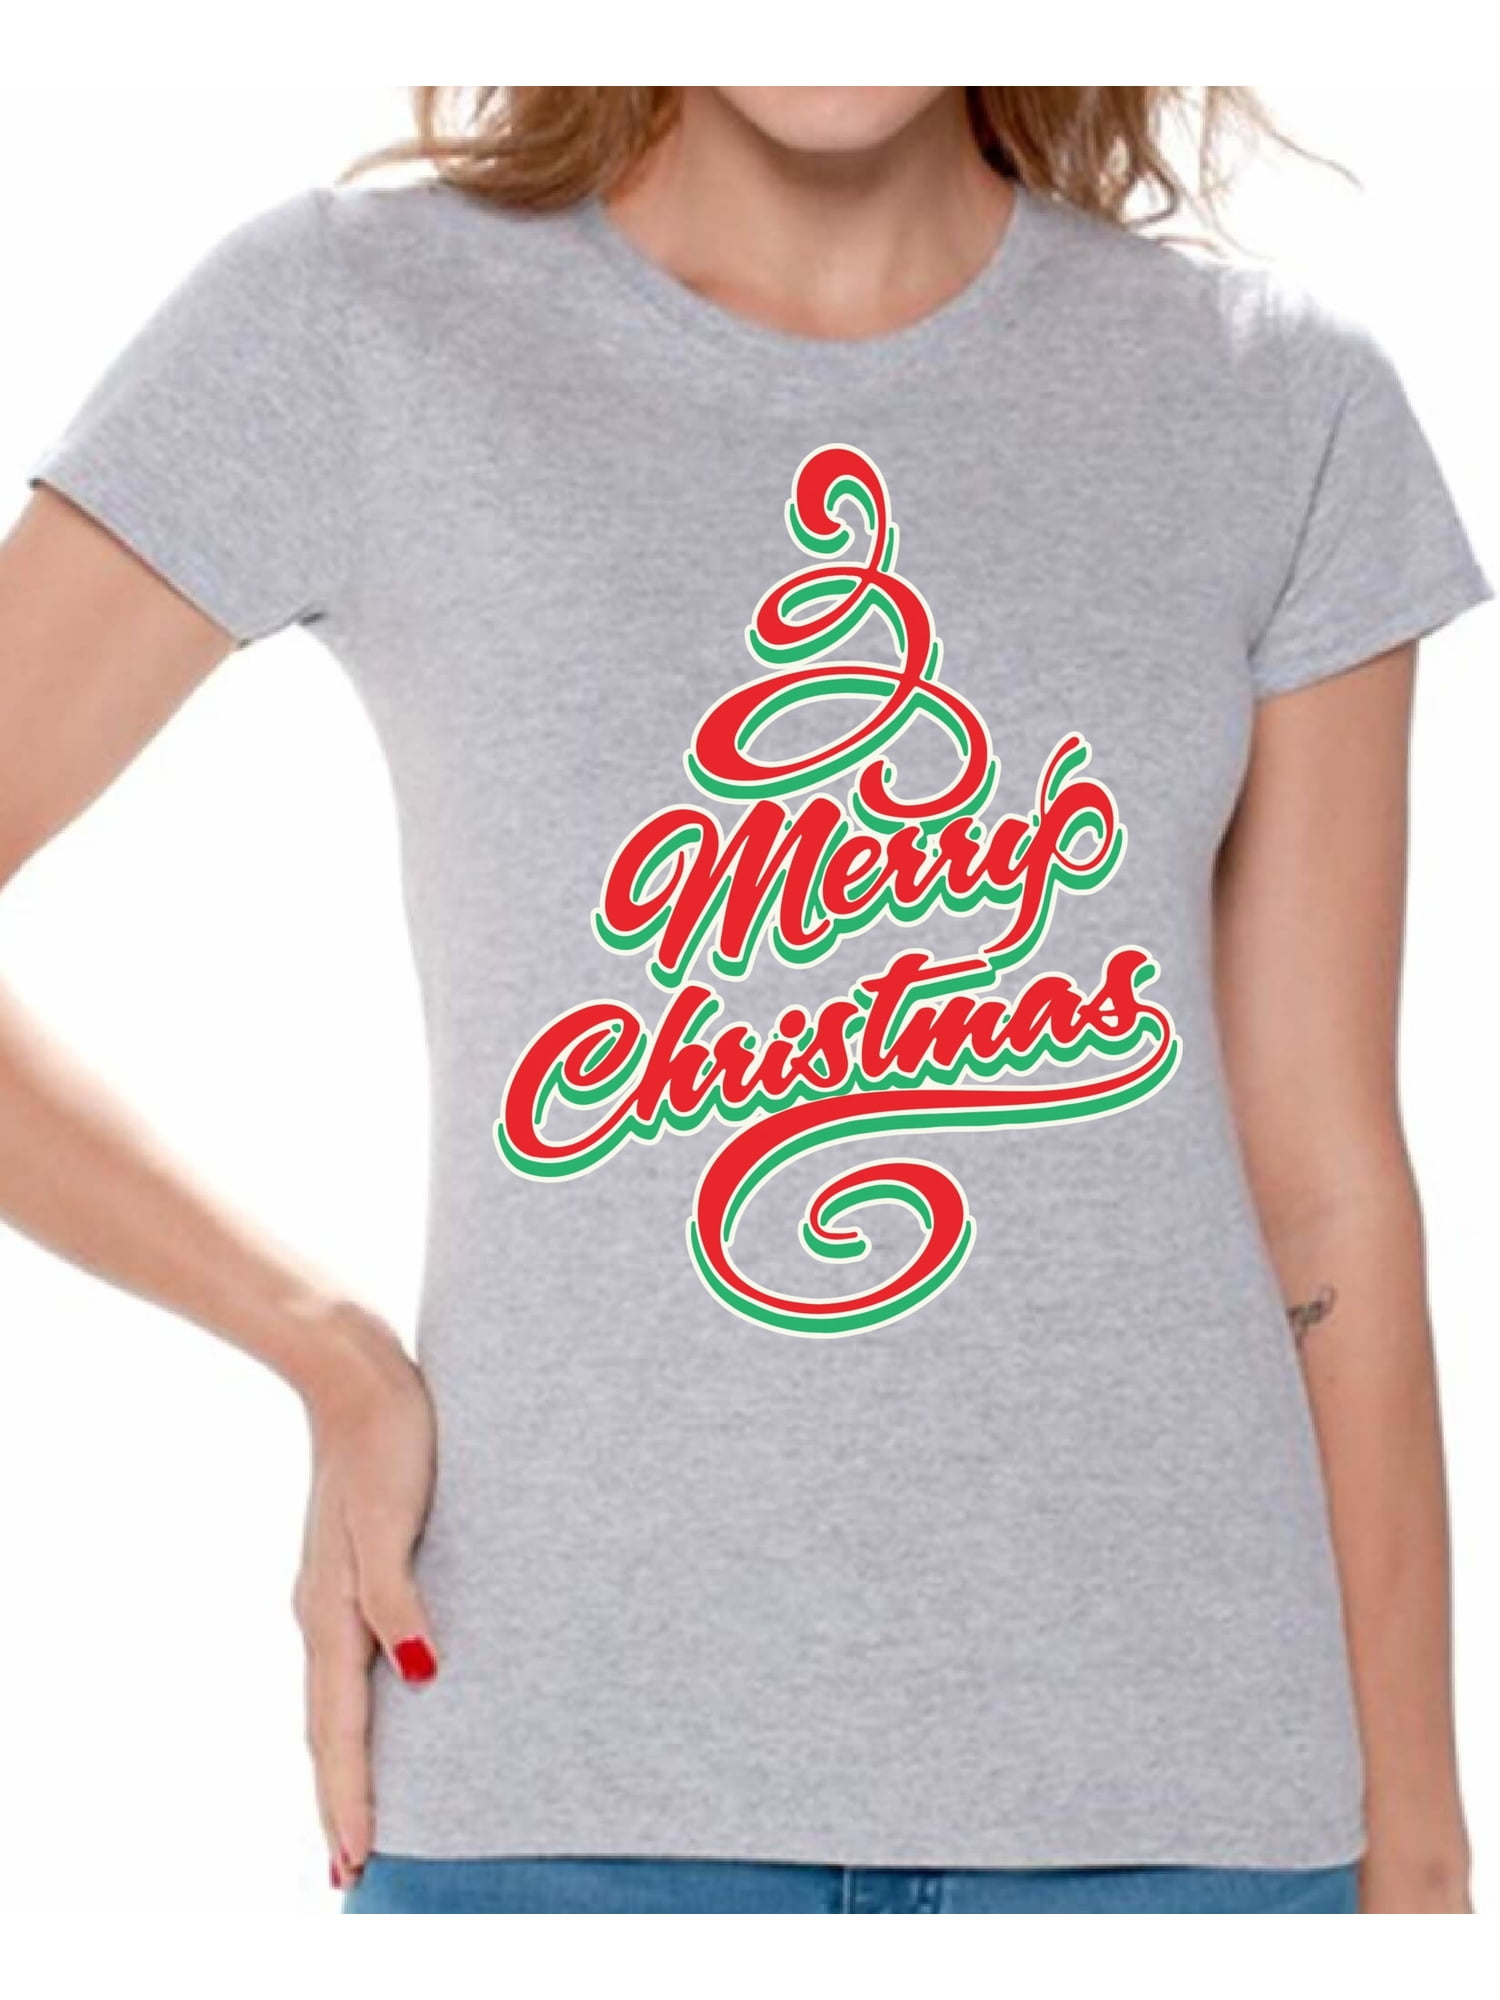 Buffalo Plaid Christmas Shirt,Merry Christmas Shirt,Christmas T-shirt,Christmas Family Shirt,Christmas Gift,Holiday Gift,Leopard Shirt